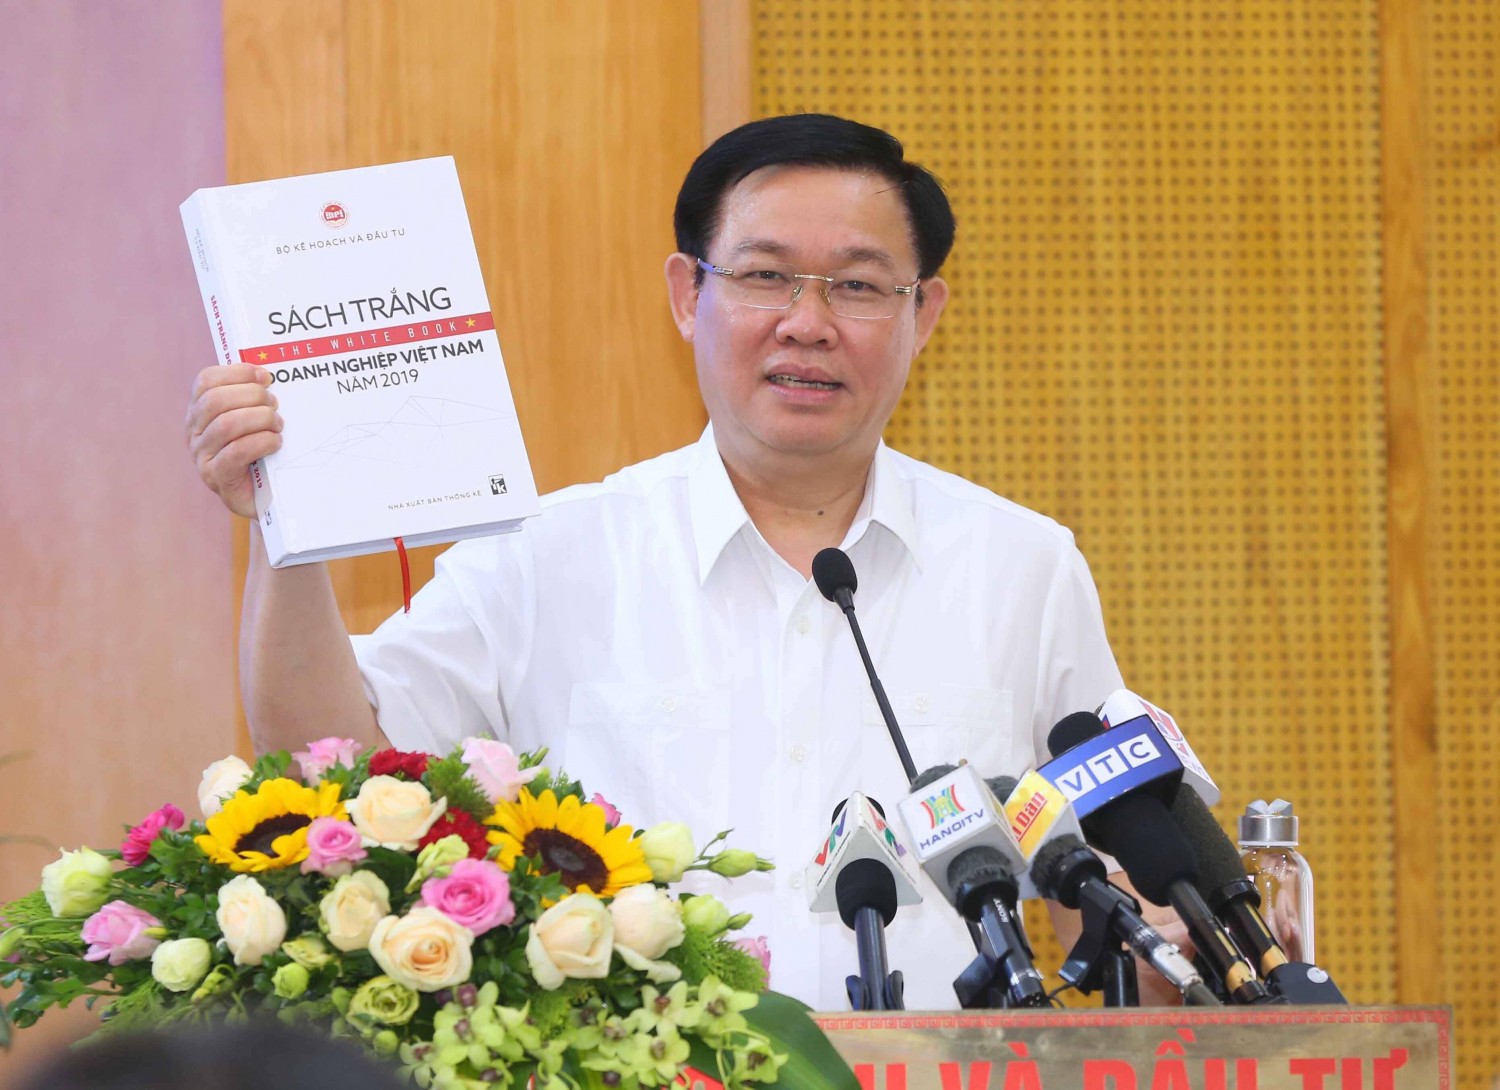 Phó Thủ tướng Vương Đình Huệ đánh giá cao nội dung Sách trắng Doanh nghiệp Việt Nam 2019 và yêu cầu tiếp tục hoàn thiện nâng cao chất lượng dữ liệu.